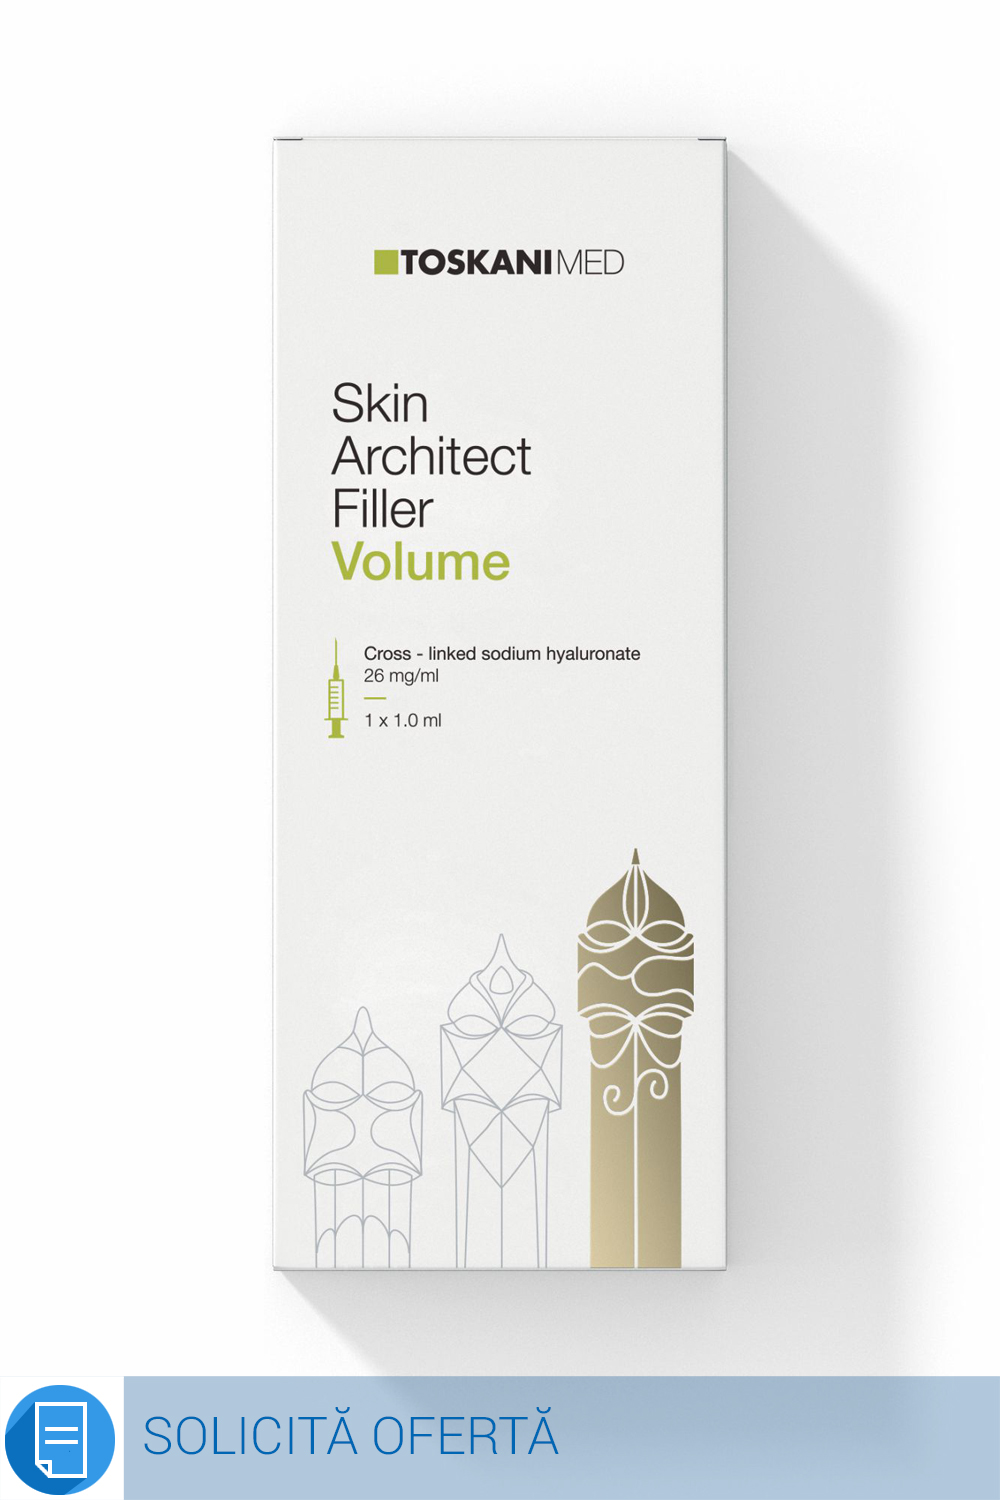 Skin Architect filler Volume 26